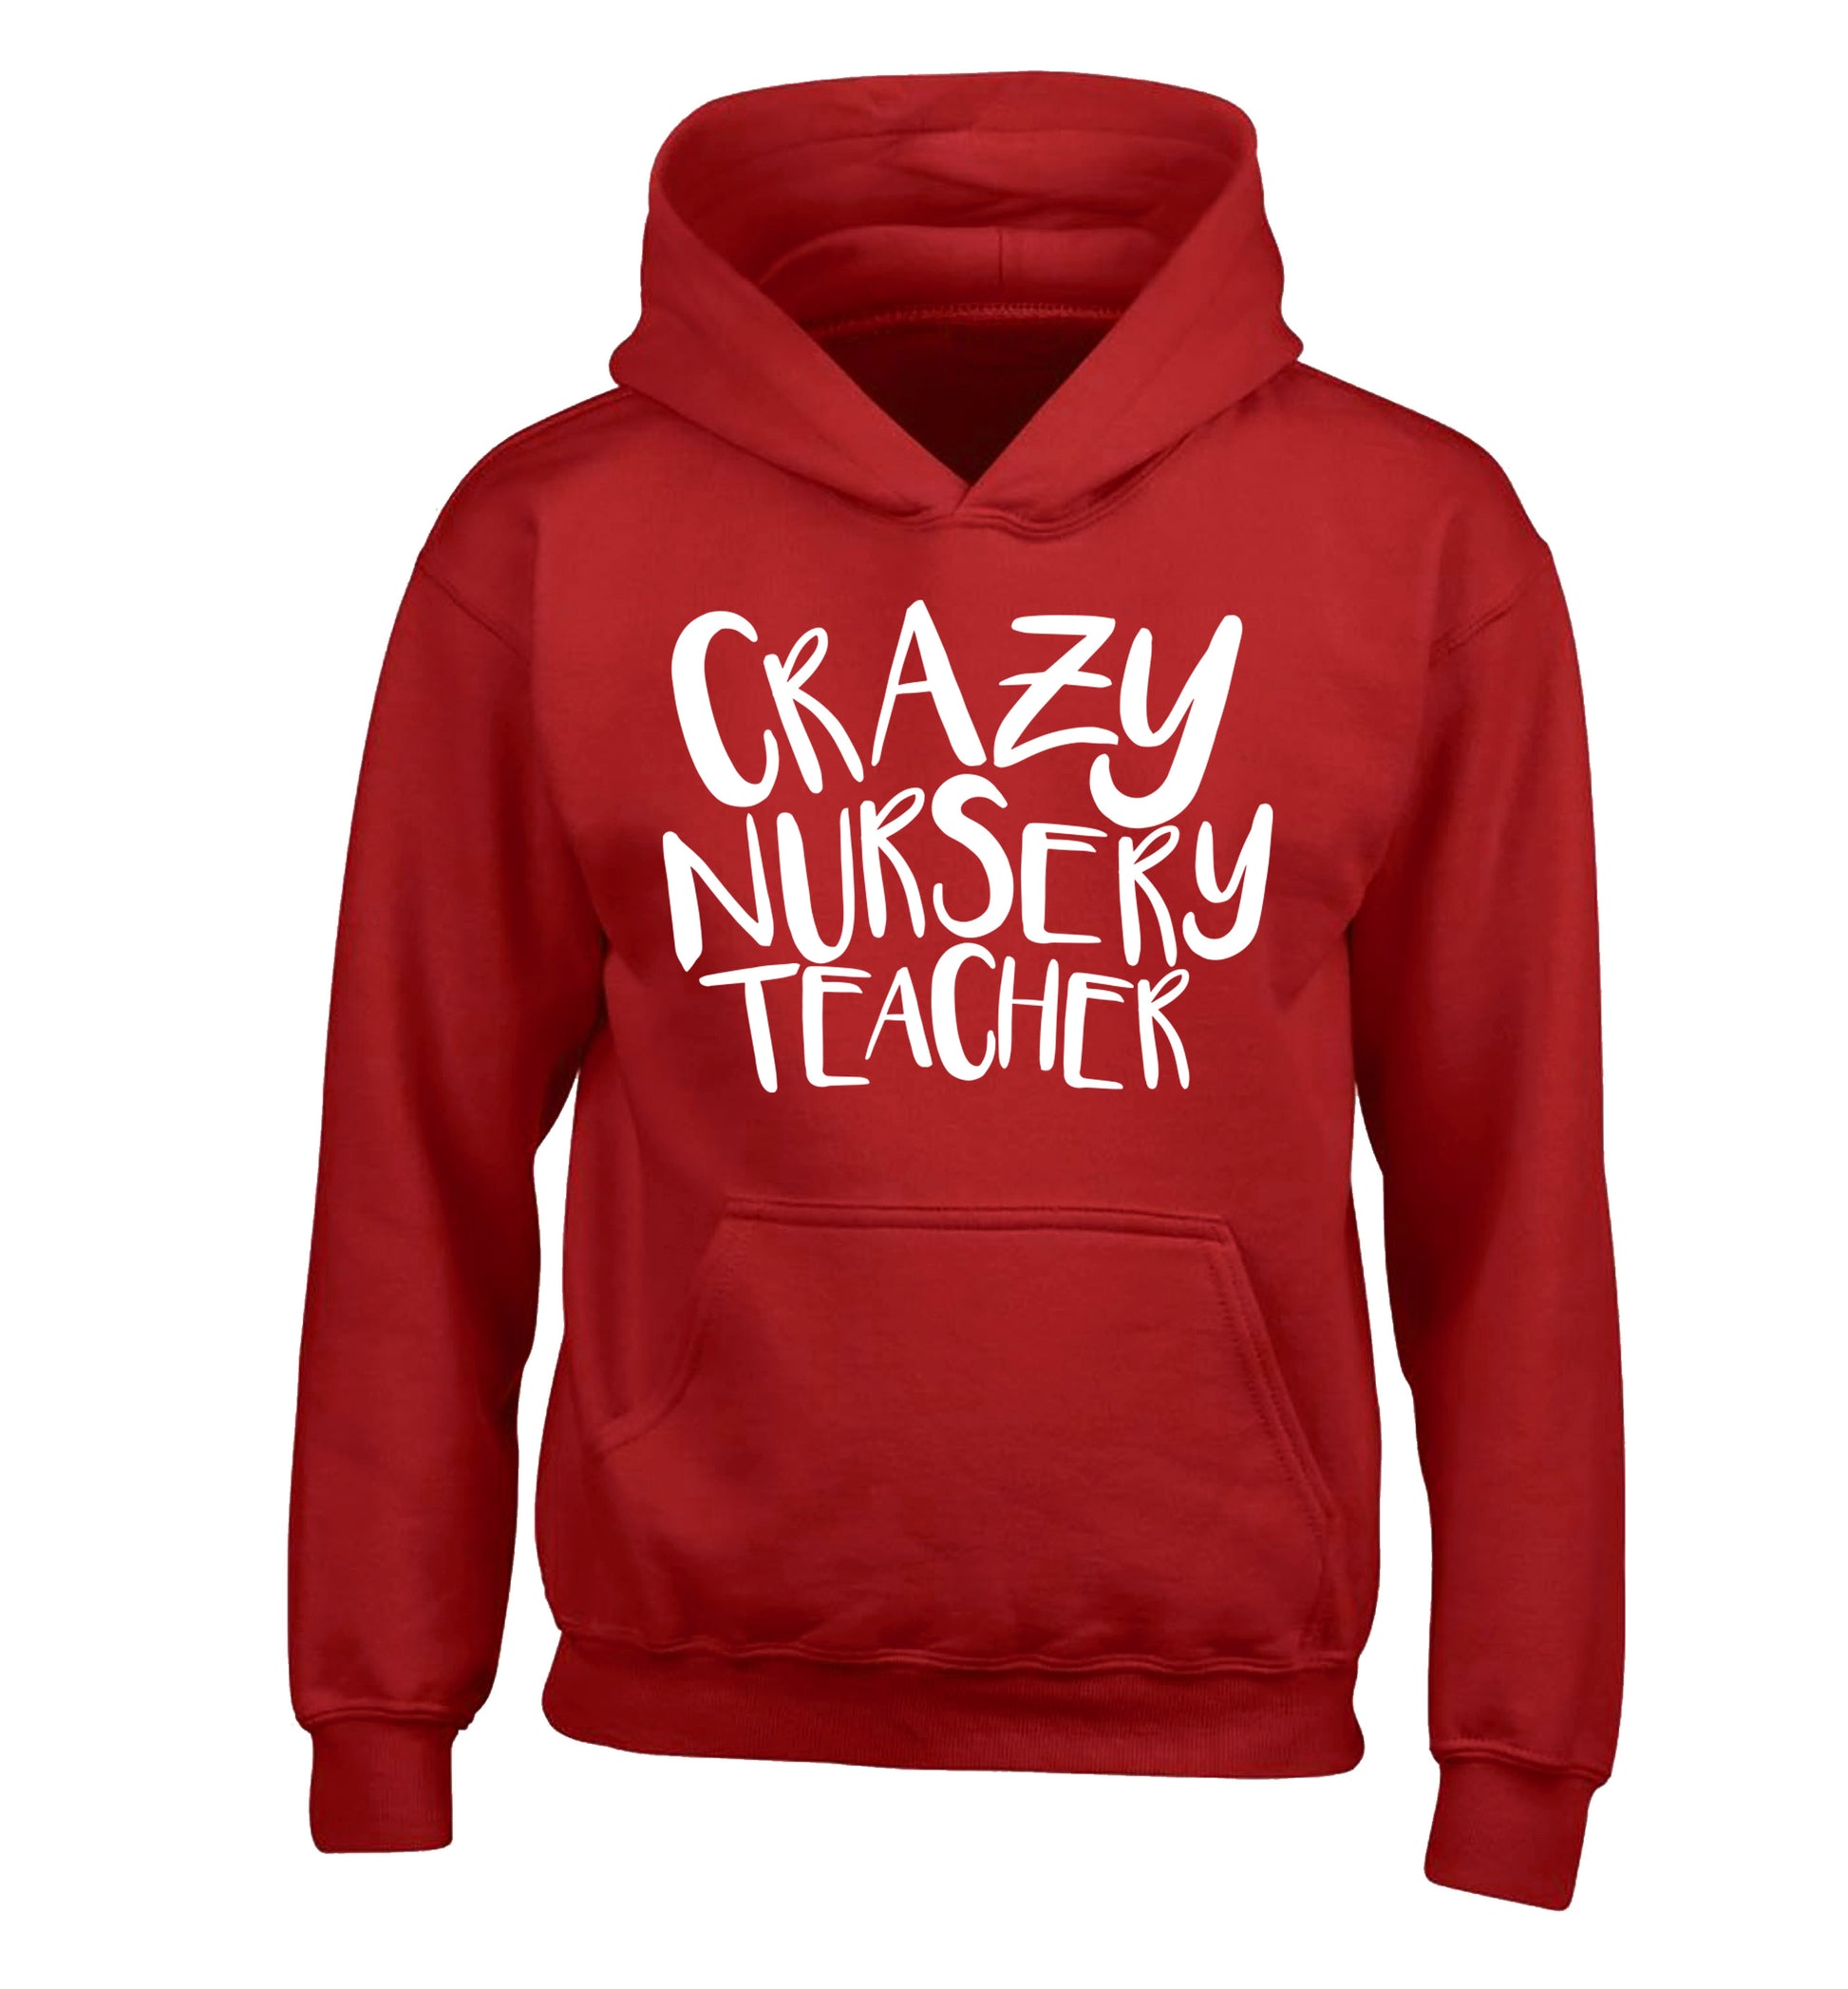 Crazy nursery teacher children's red hoodie 12-13 Years